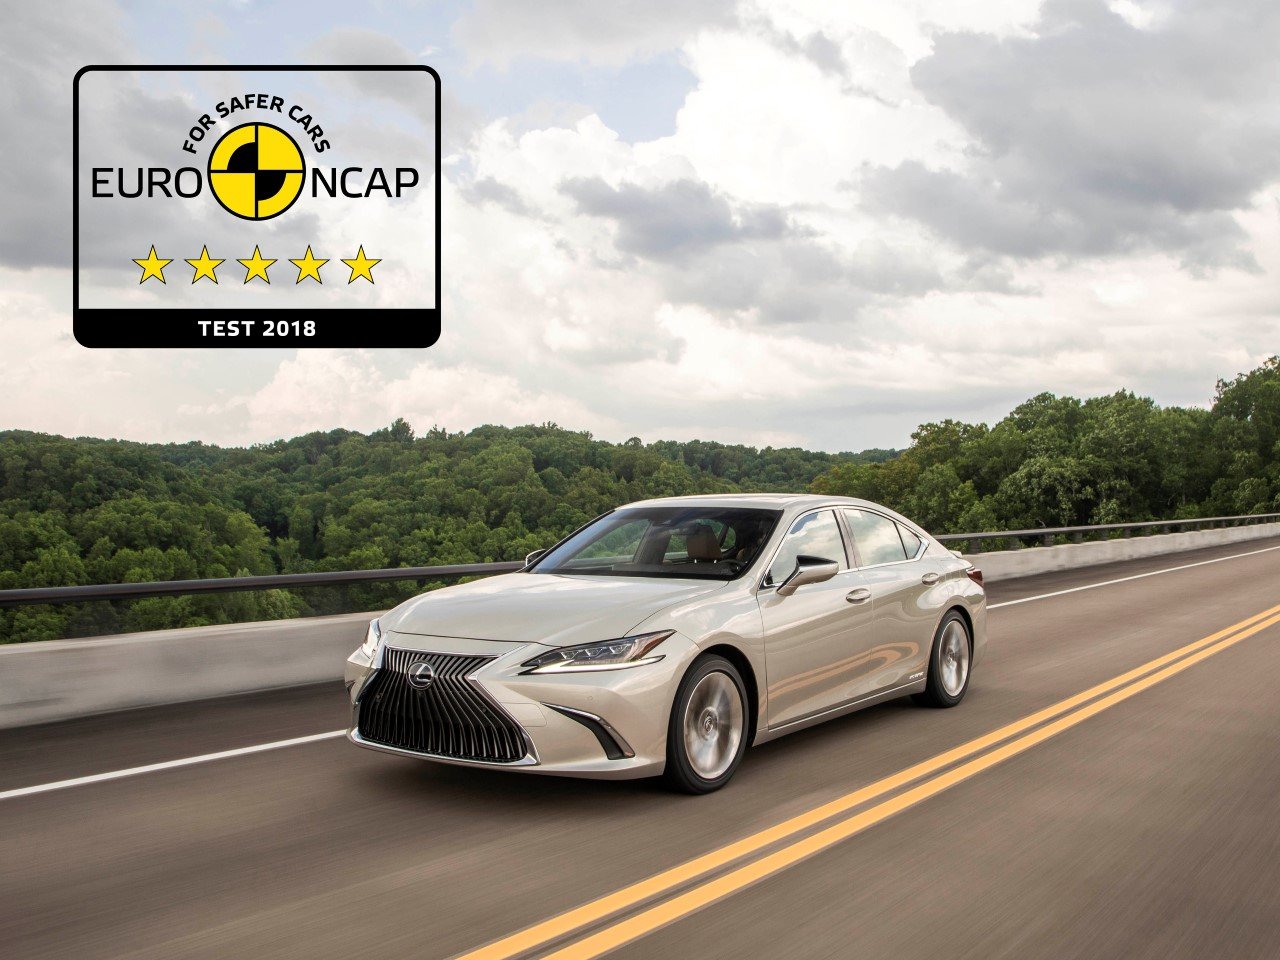 Nový Lexus ES patří mezi nejbezpečnější vozy v historii testování Euro NCAP